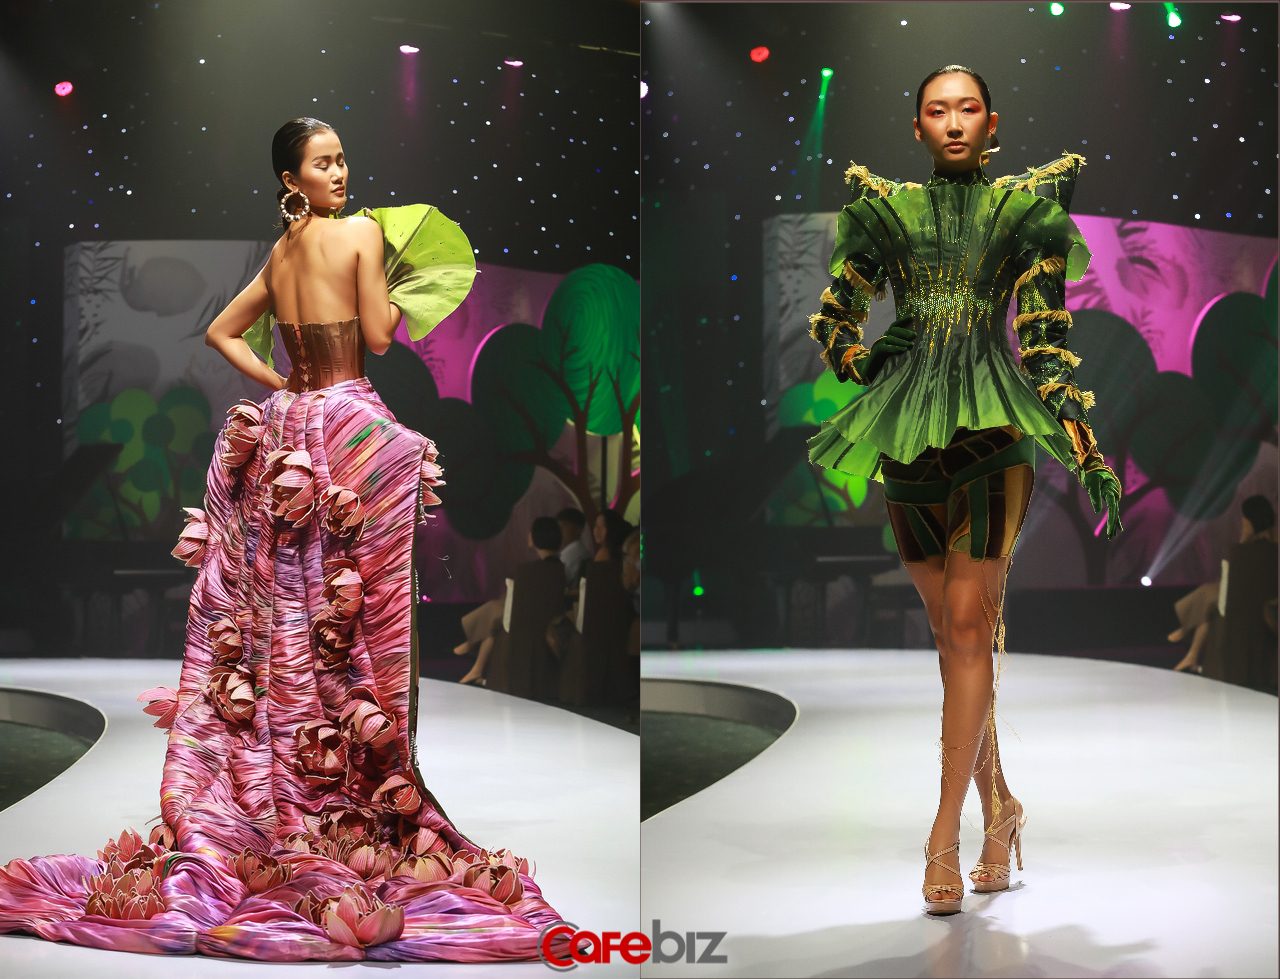 Việt Nam đang đứng ở đâu trong xu hướng ‘thời trang sinh học’ trị giá 89 tỷ USD vào năm 2025 của thế giới? - Ảnh 1.